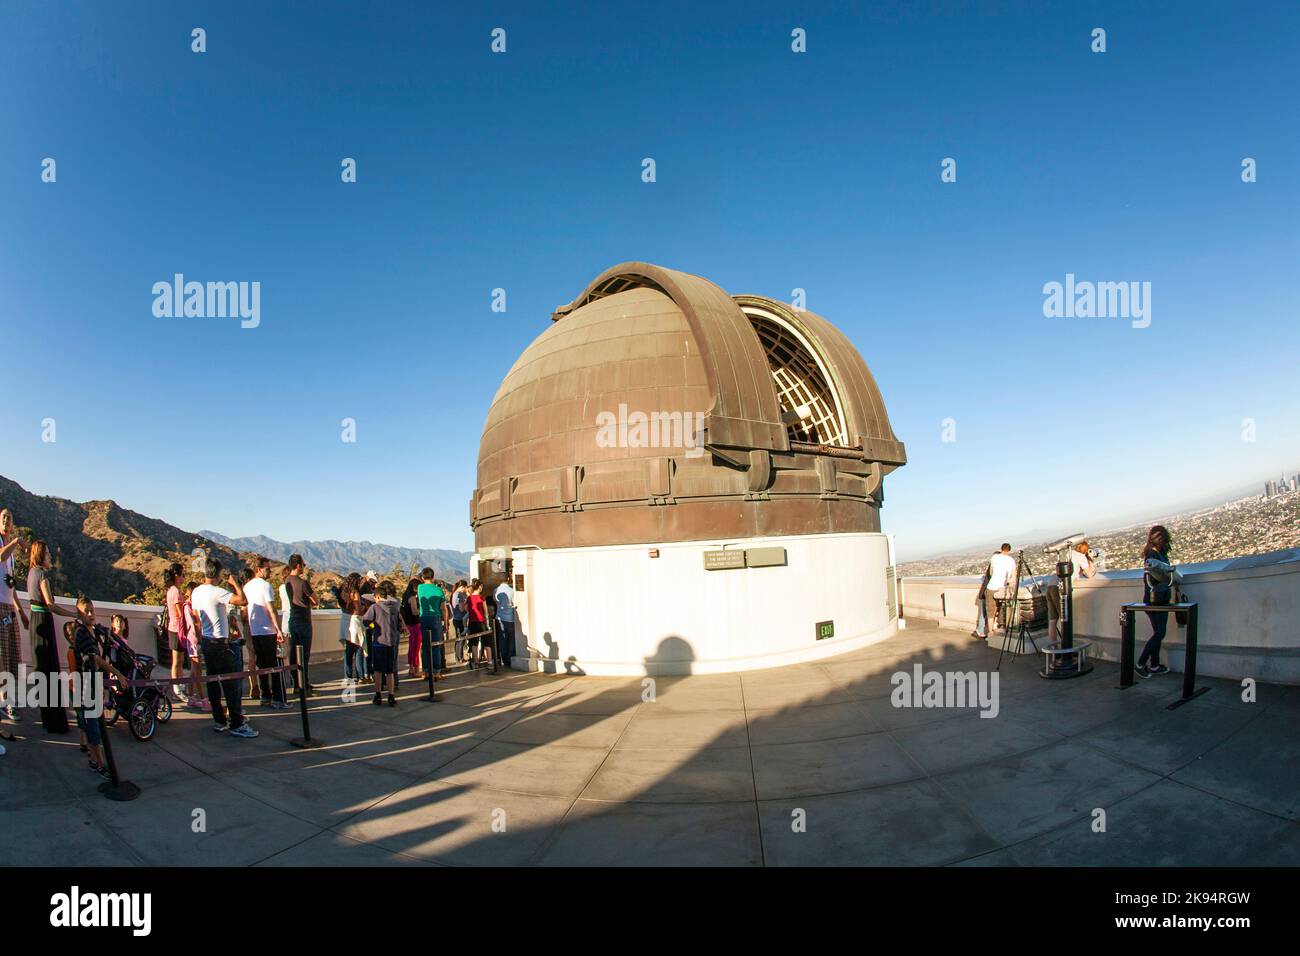 LOS ANGELES, USA - 24 GIUGNO: Il famoso osservatorio Griffith è aperto a guardare la costellazione della luna il 24 giugno 2012 a Los Angeles, USA. La gente guarda t Foto Stock